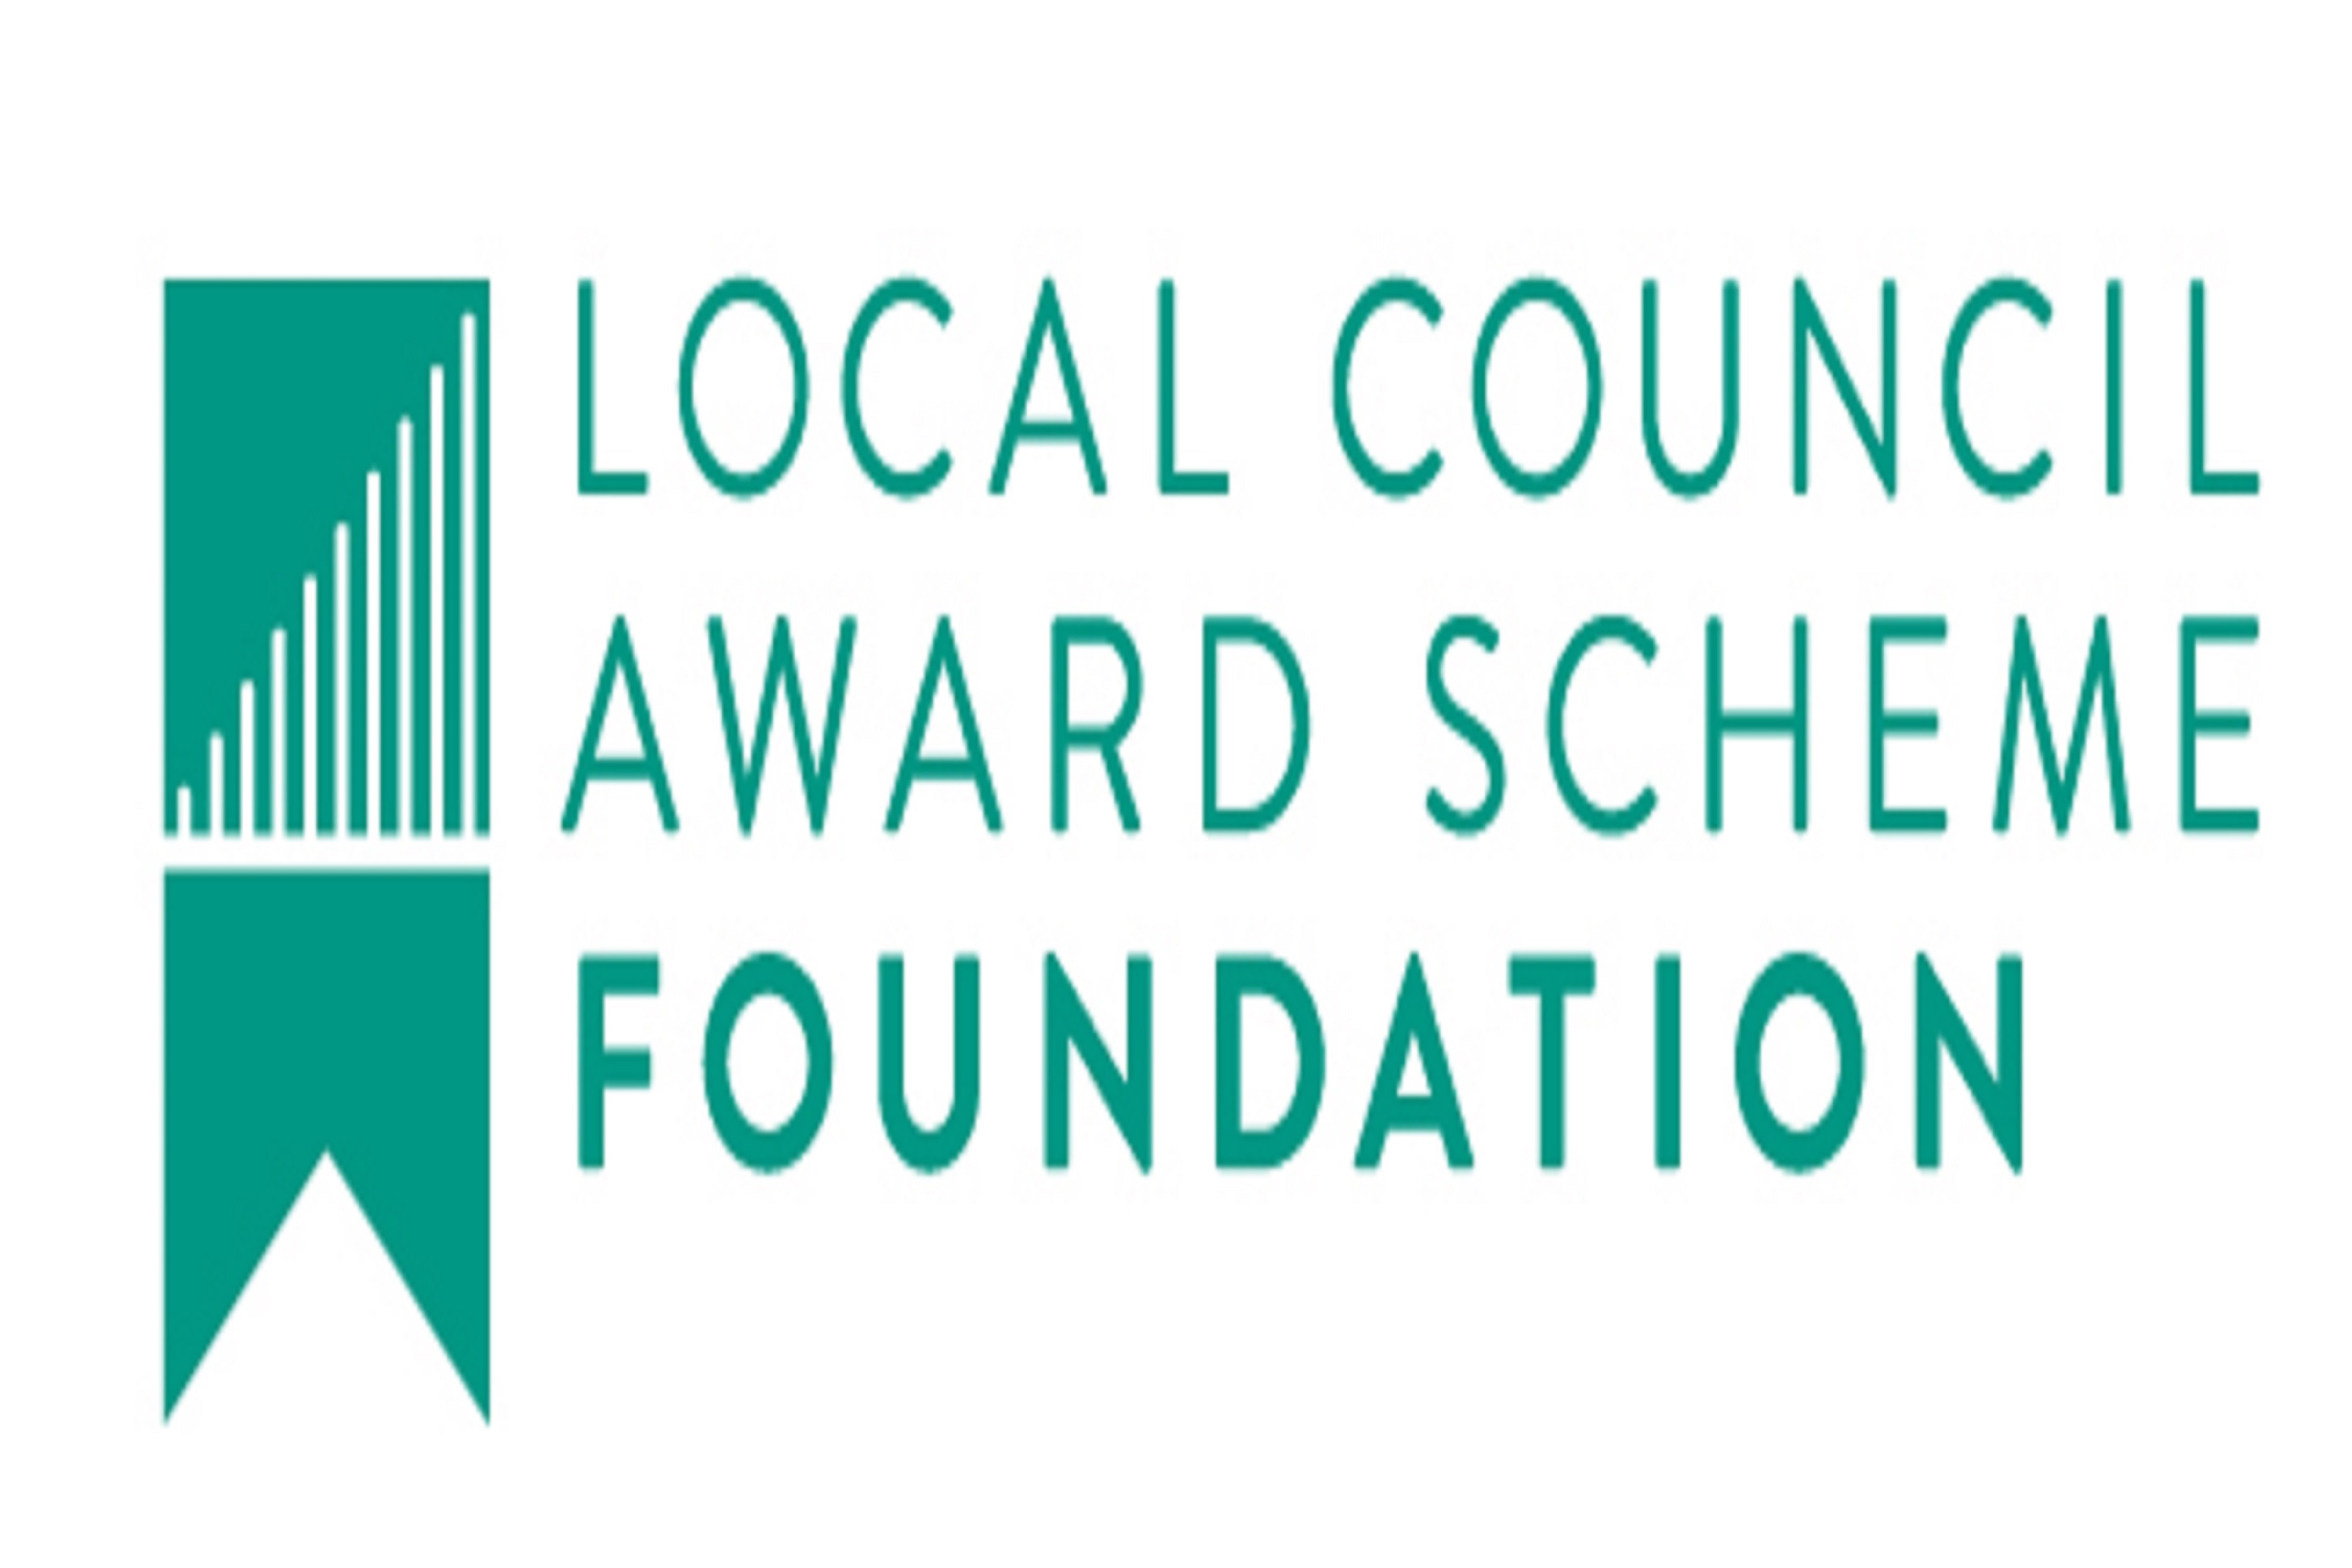 Local council award scheme